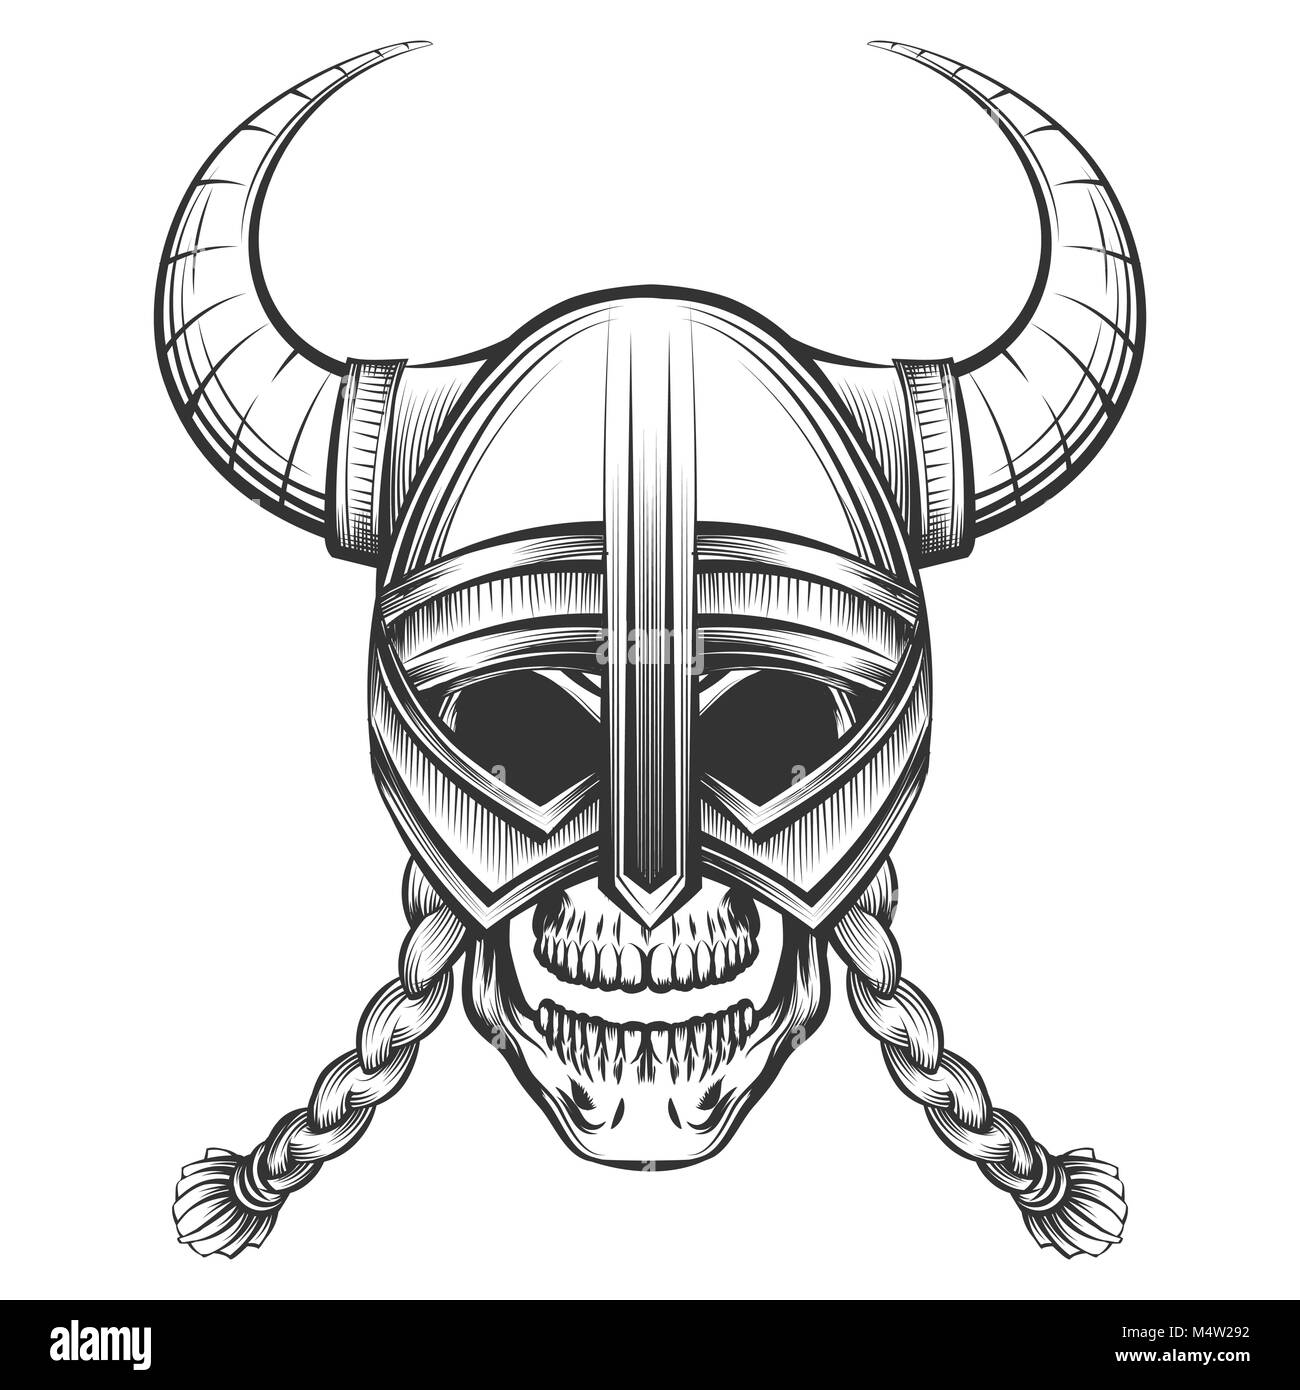 Ilustración de vector de casco vikingo en un estilo vintage